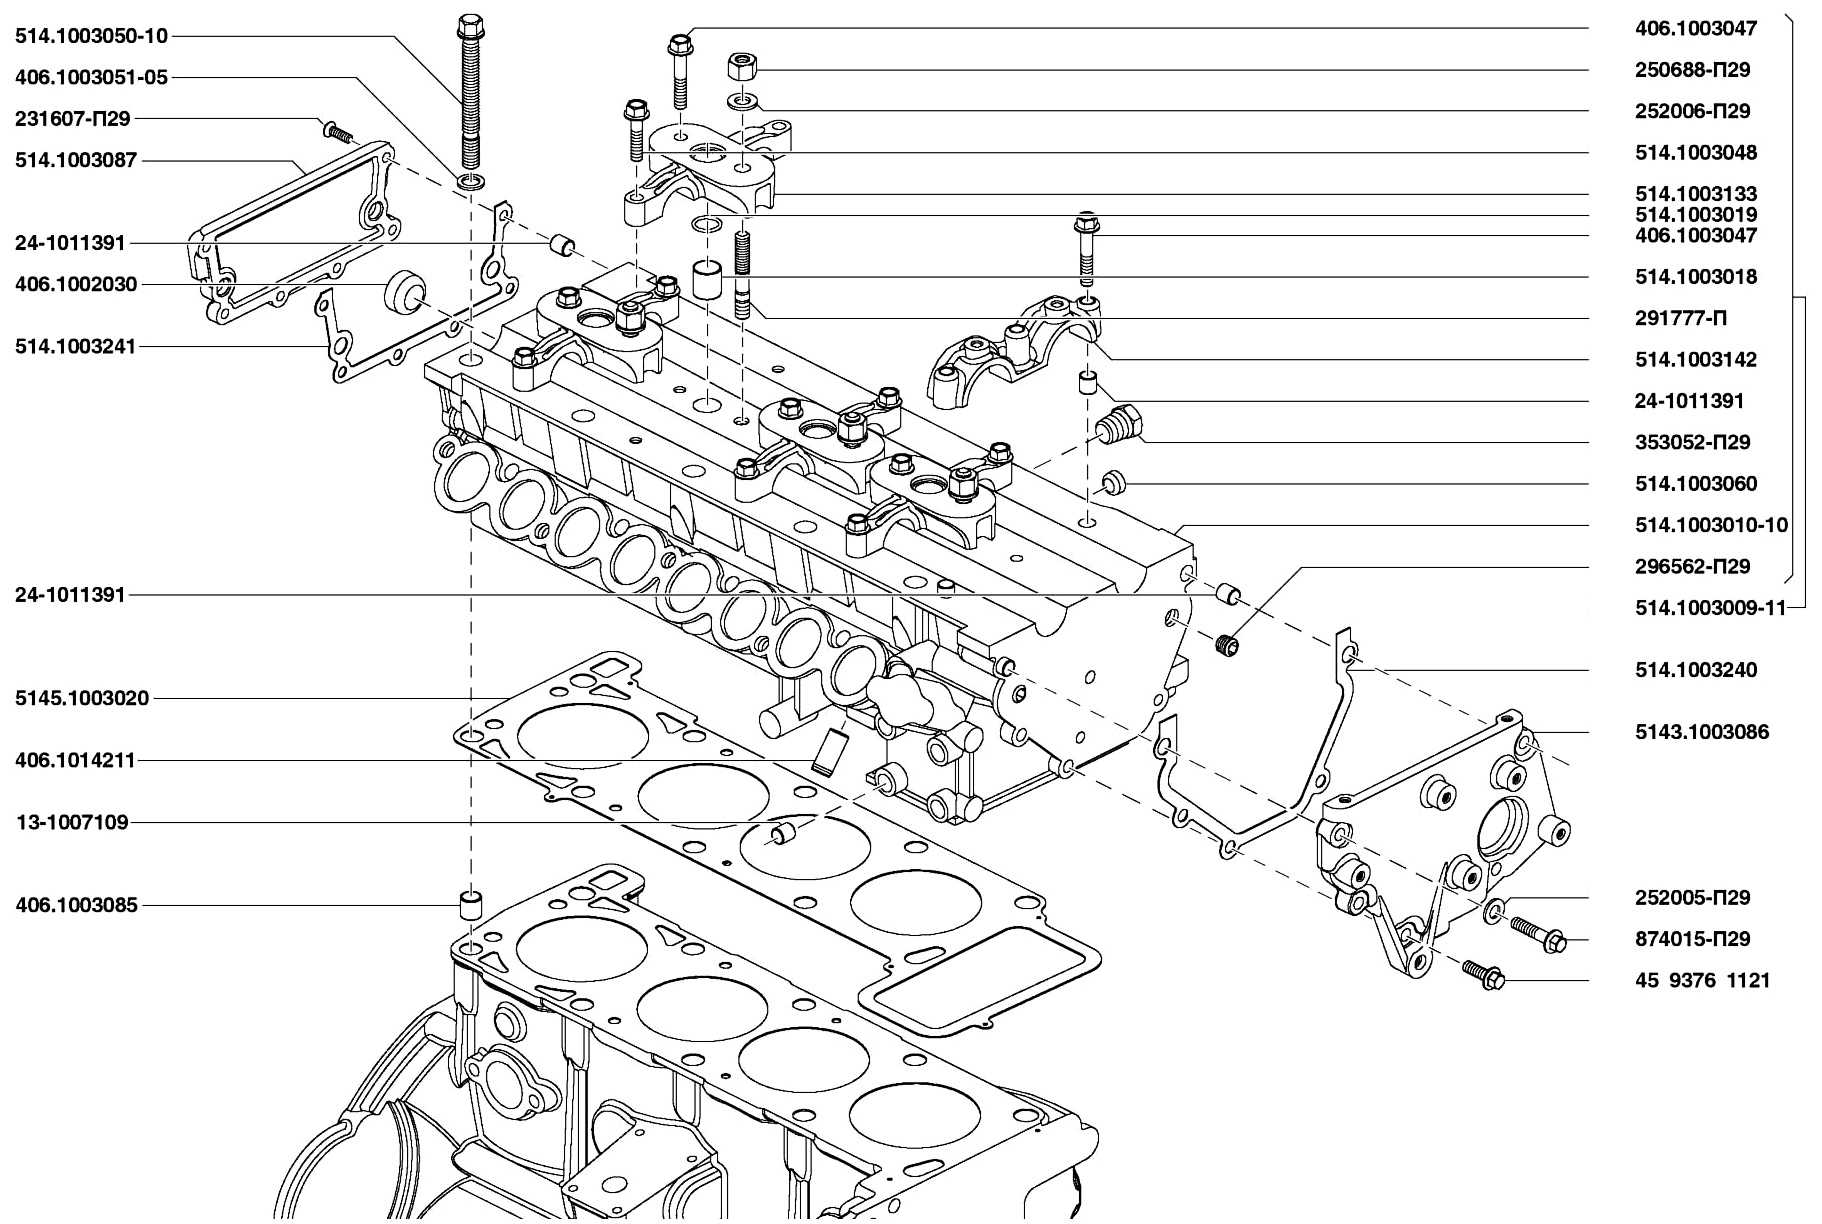 Схема топливной системы уаз буханка инжектор 409 двигатель